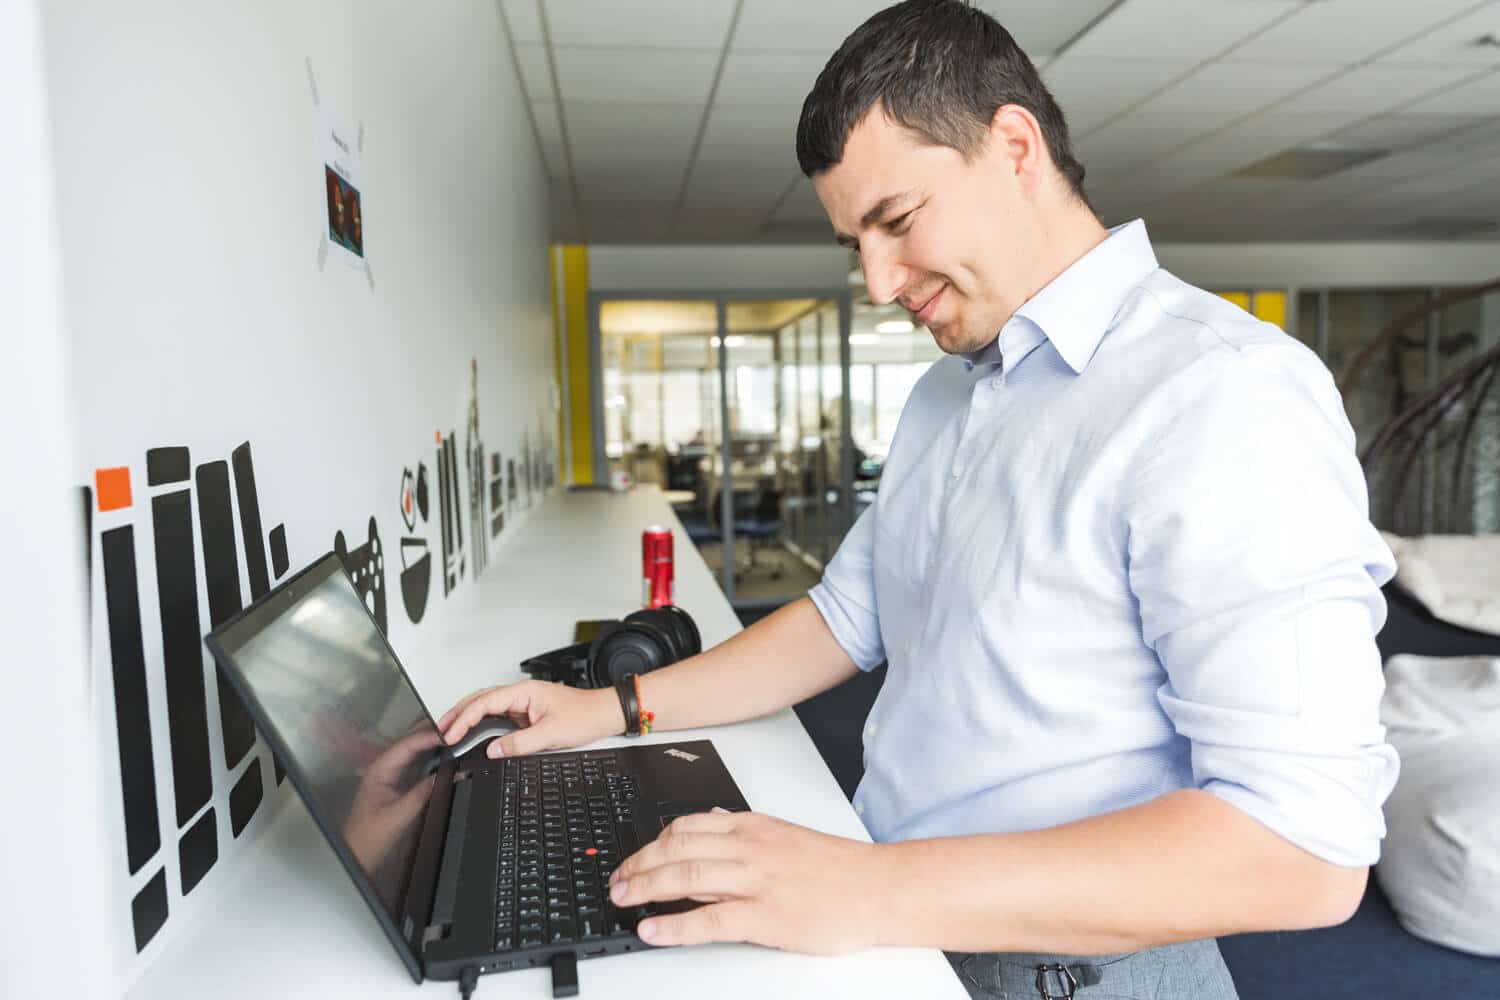 A Zenitech employee using a laptop